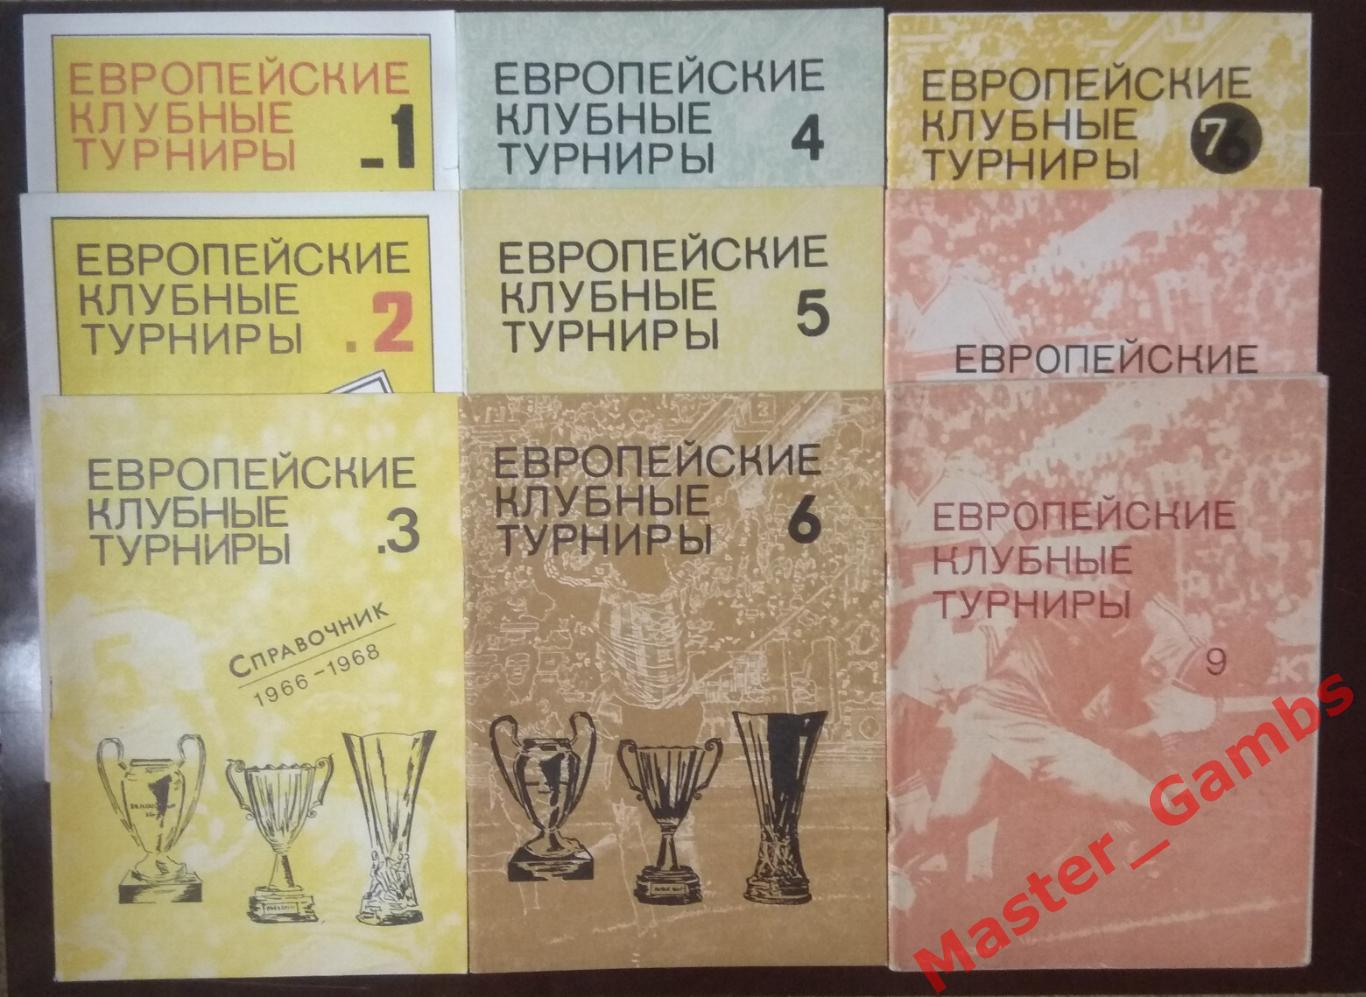 травкин - европейские клубные турниры ##1-9 (1955 - 1989 г.г.)/ москва